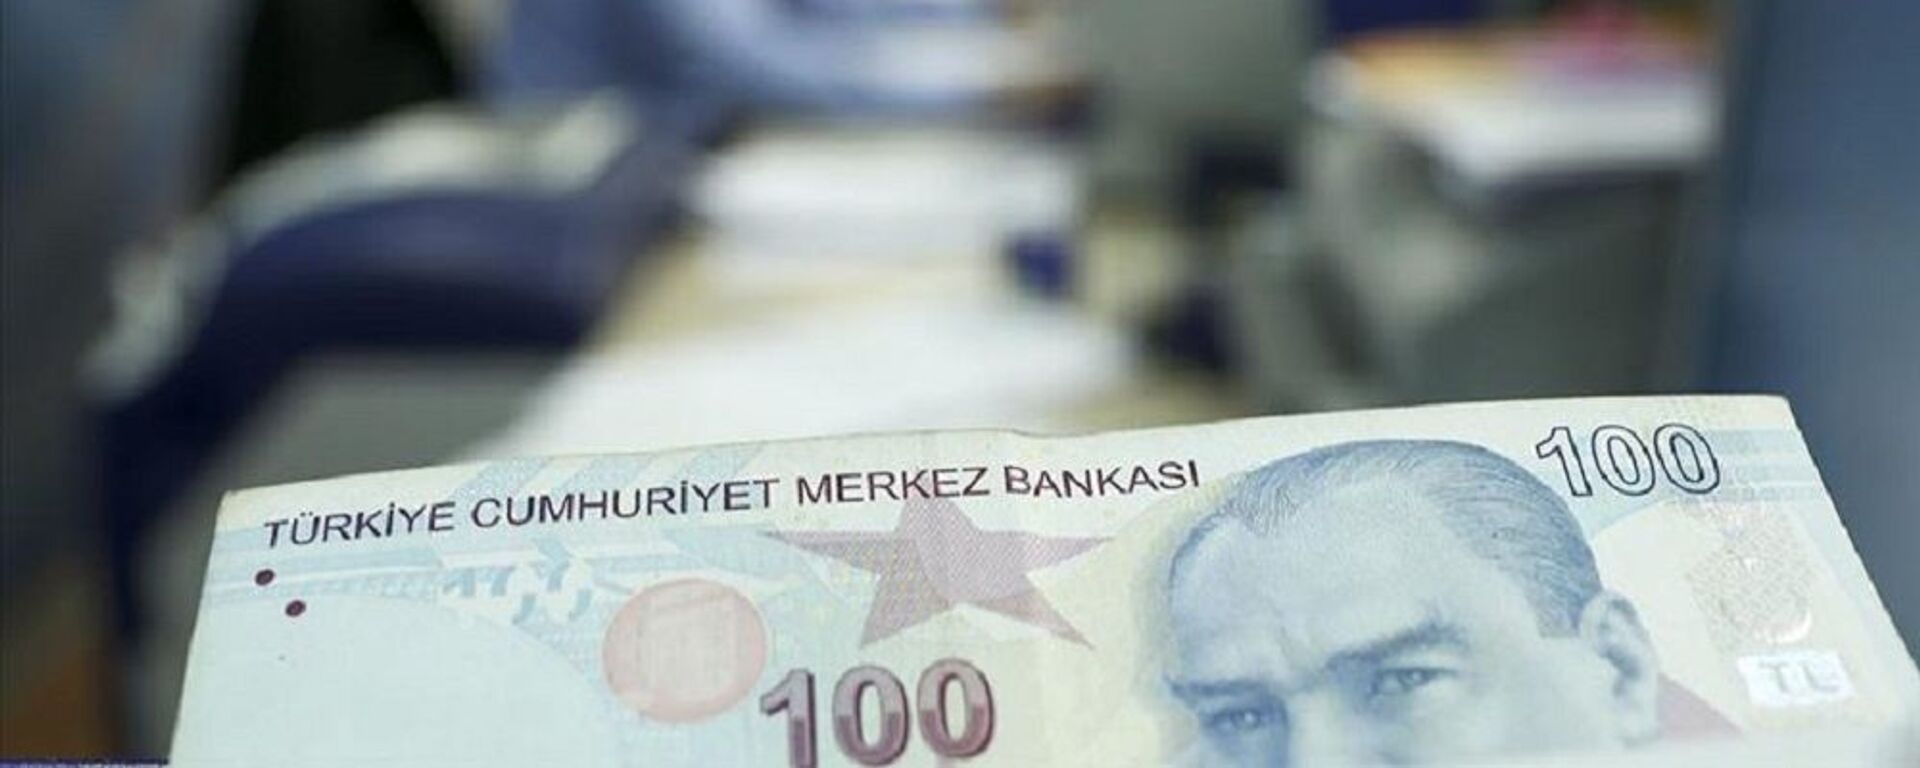 kısa çalışma ödeneği, türk lirası, banka, para - Sputnik Türkiye, 1920, 07.12.2021